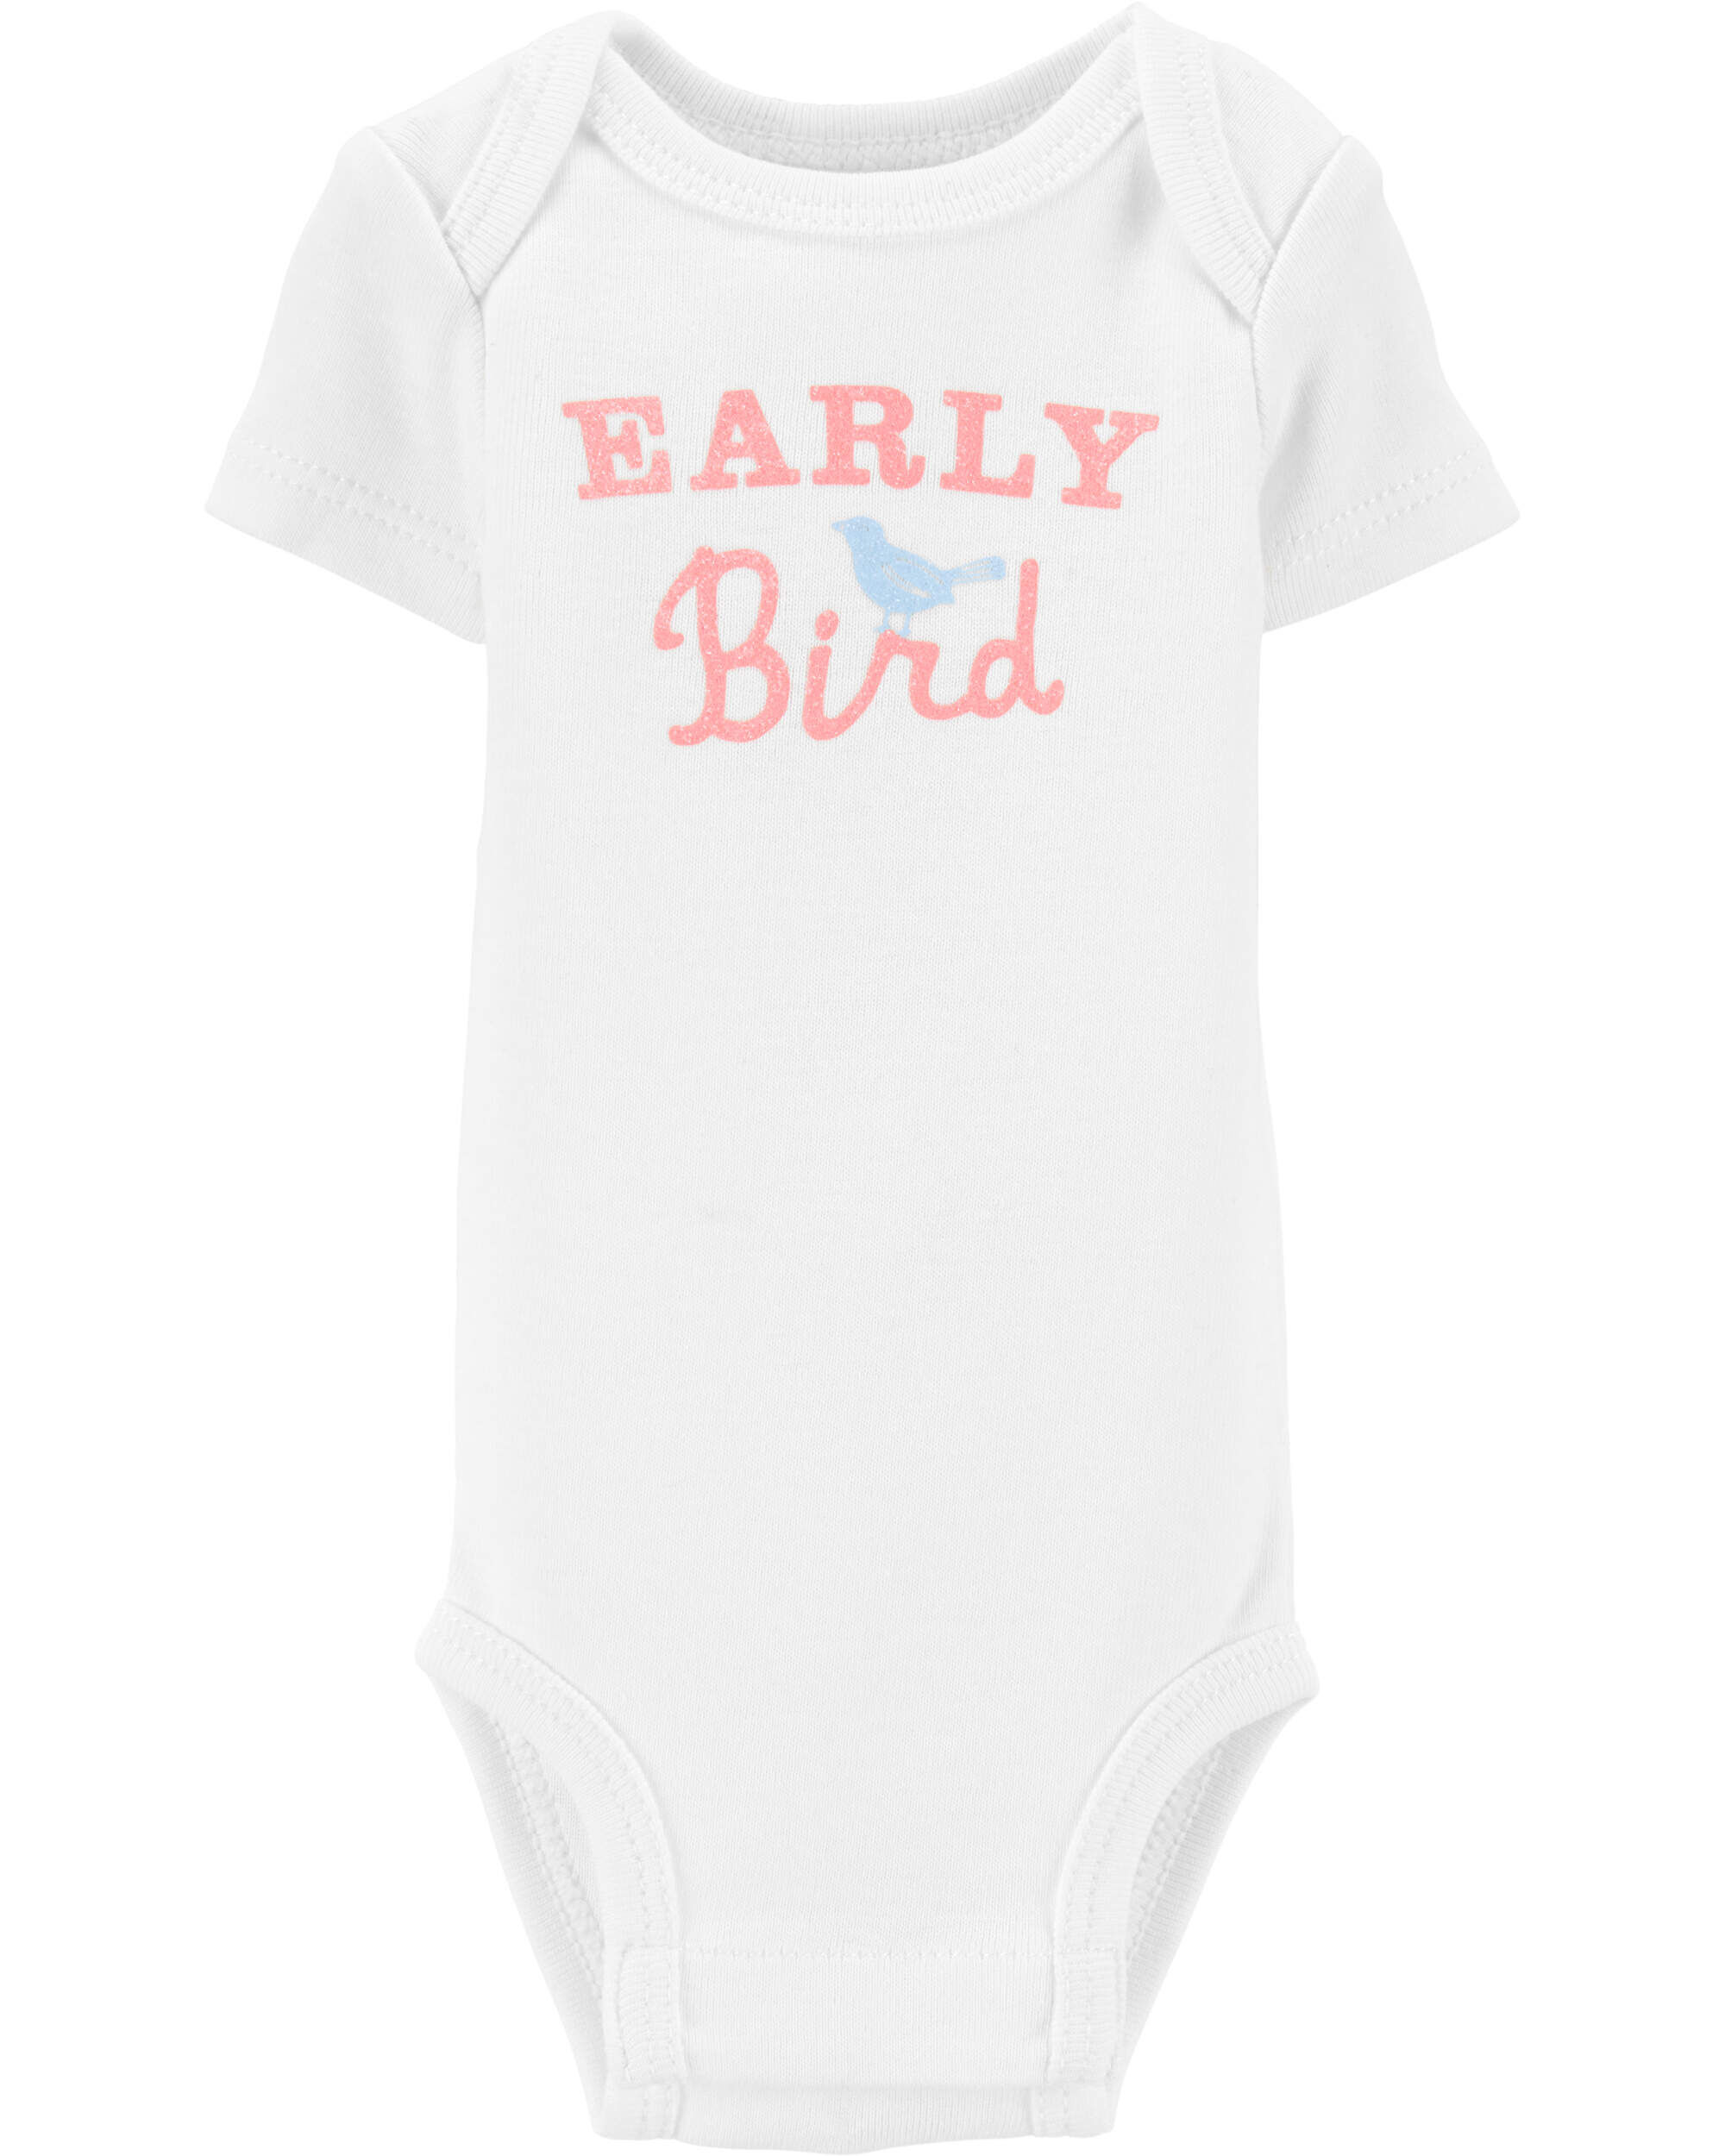 Carters Preemie Early Bird Bodysuit